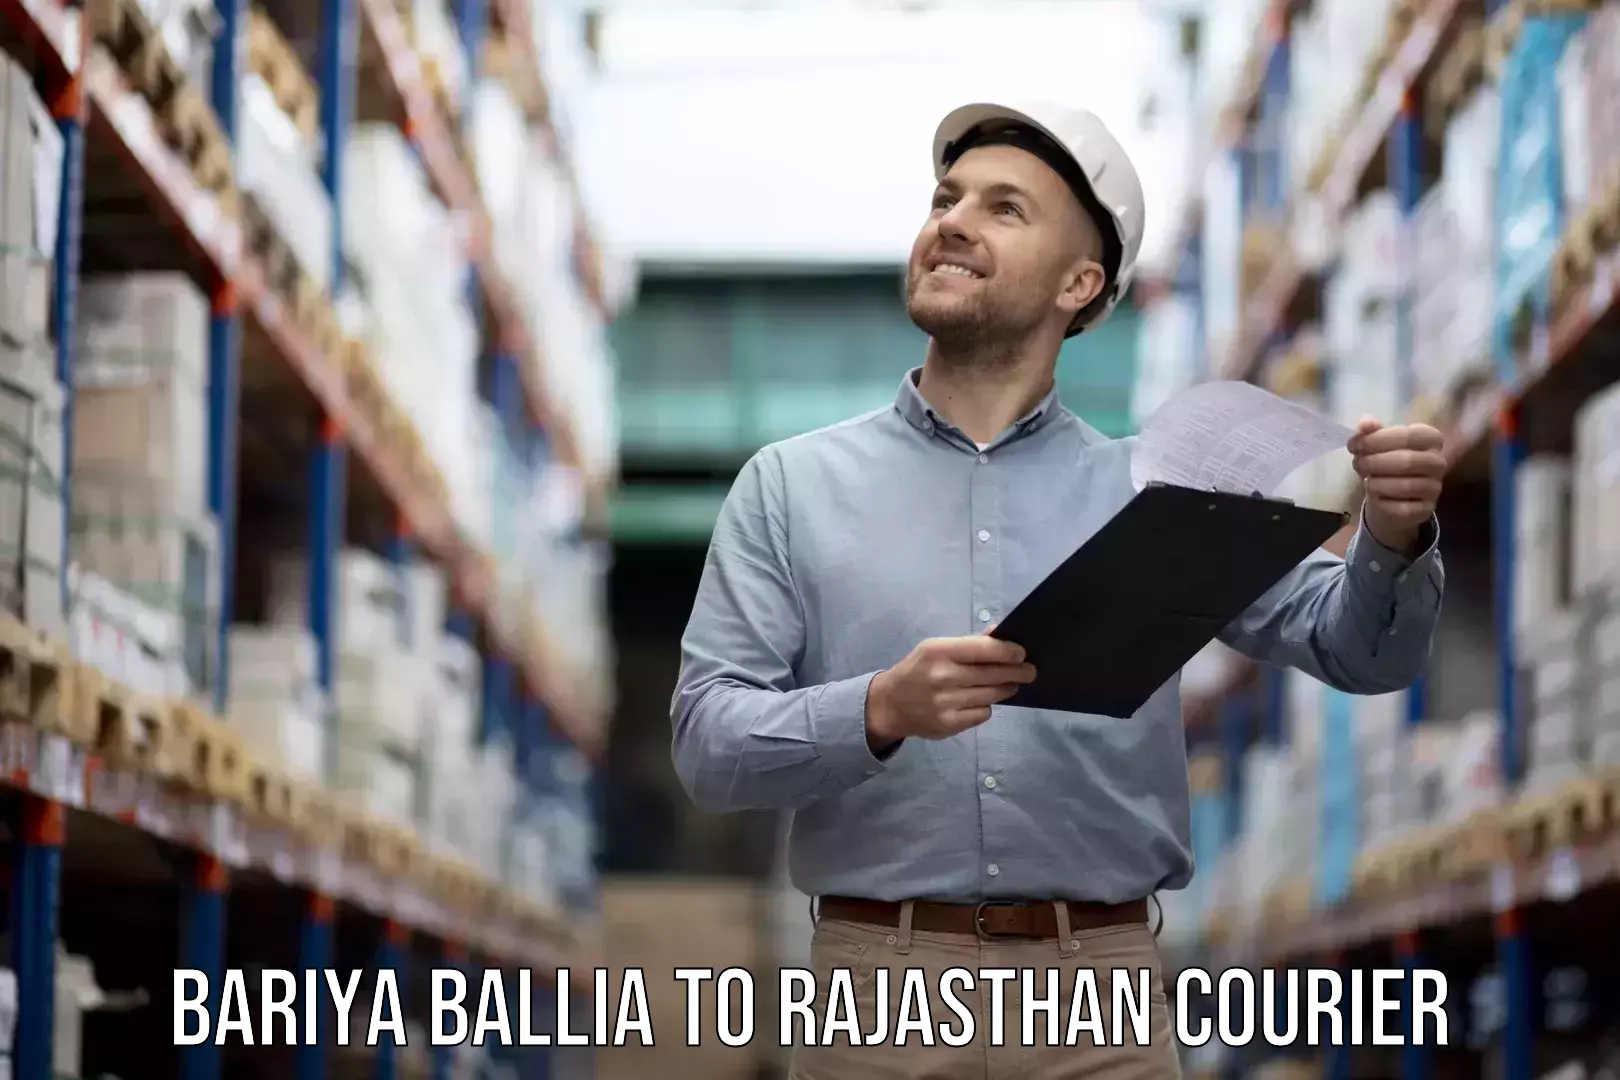 Personalized moving service Bariya Ballia to Rawatbhata